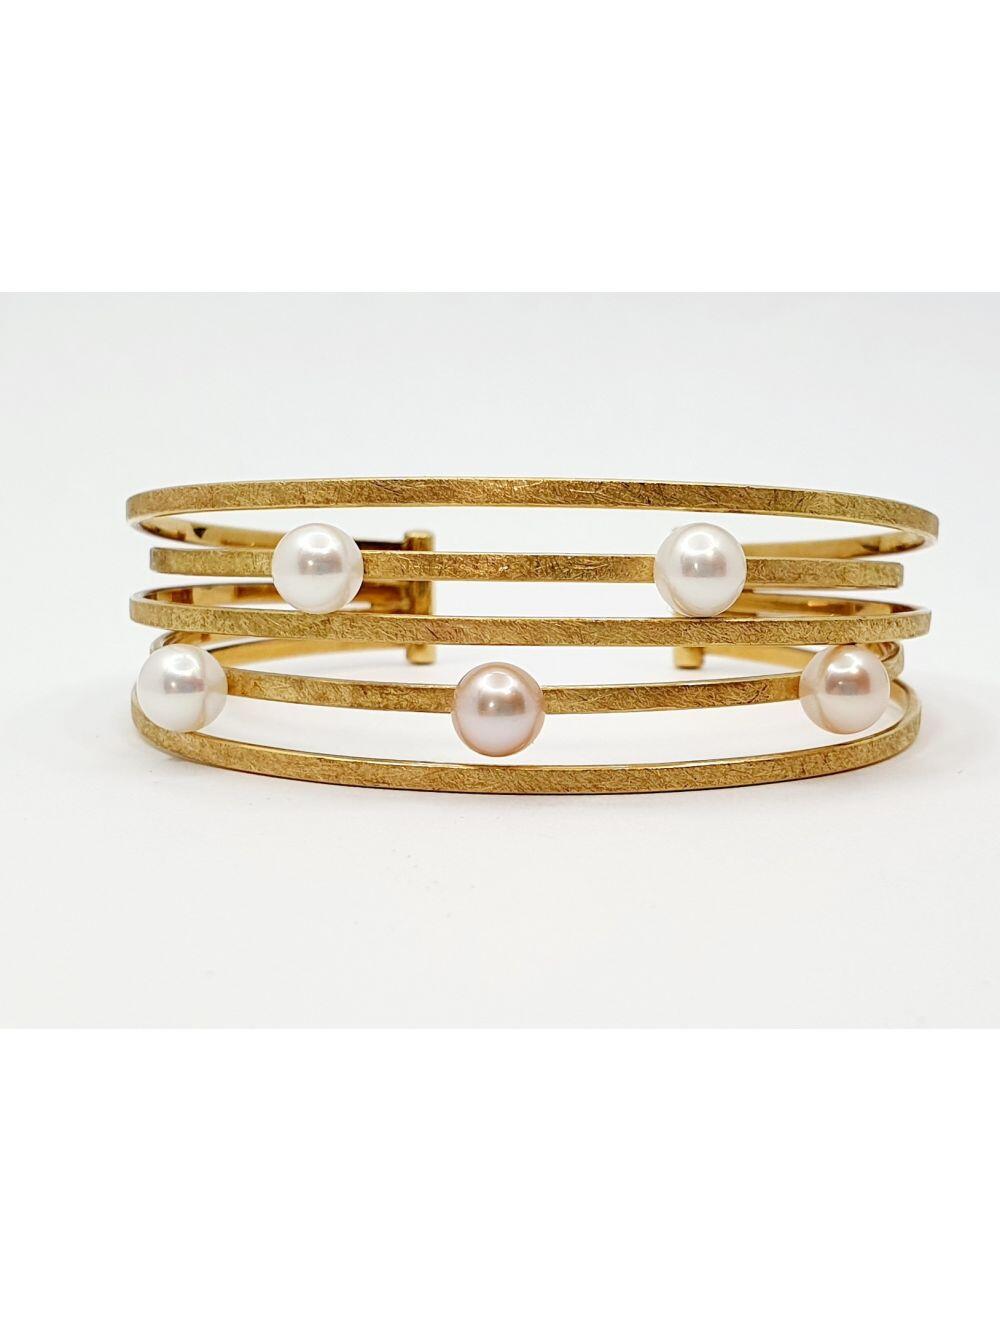 # Armband aus Gelbgold mit Perlen ( Wegpreis 499€ + 34gr von deinem Gold )